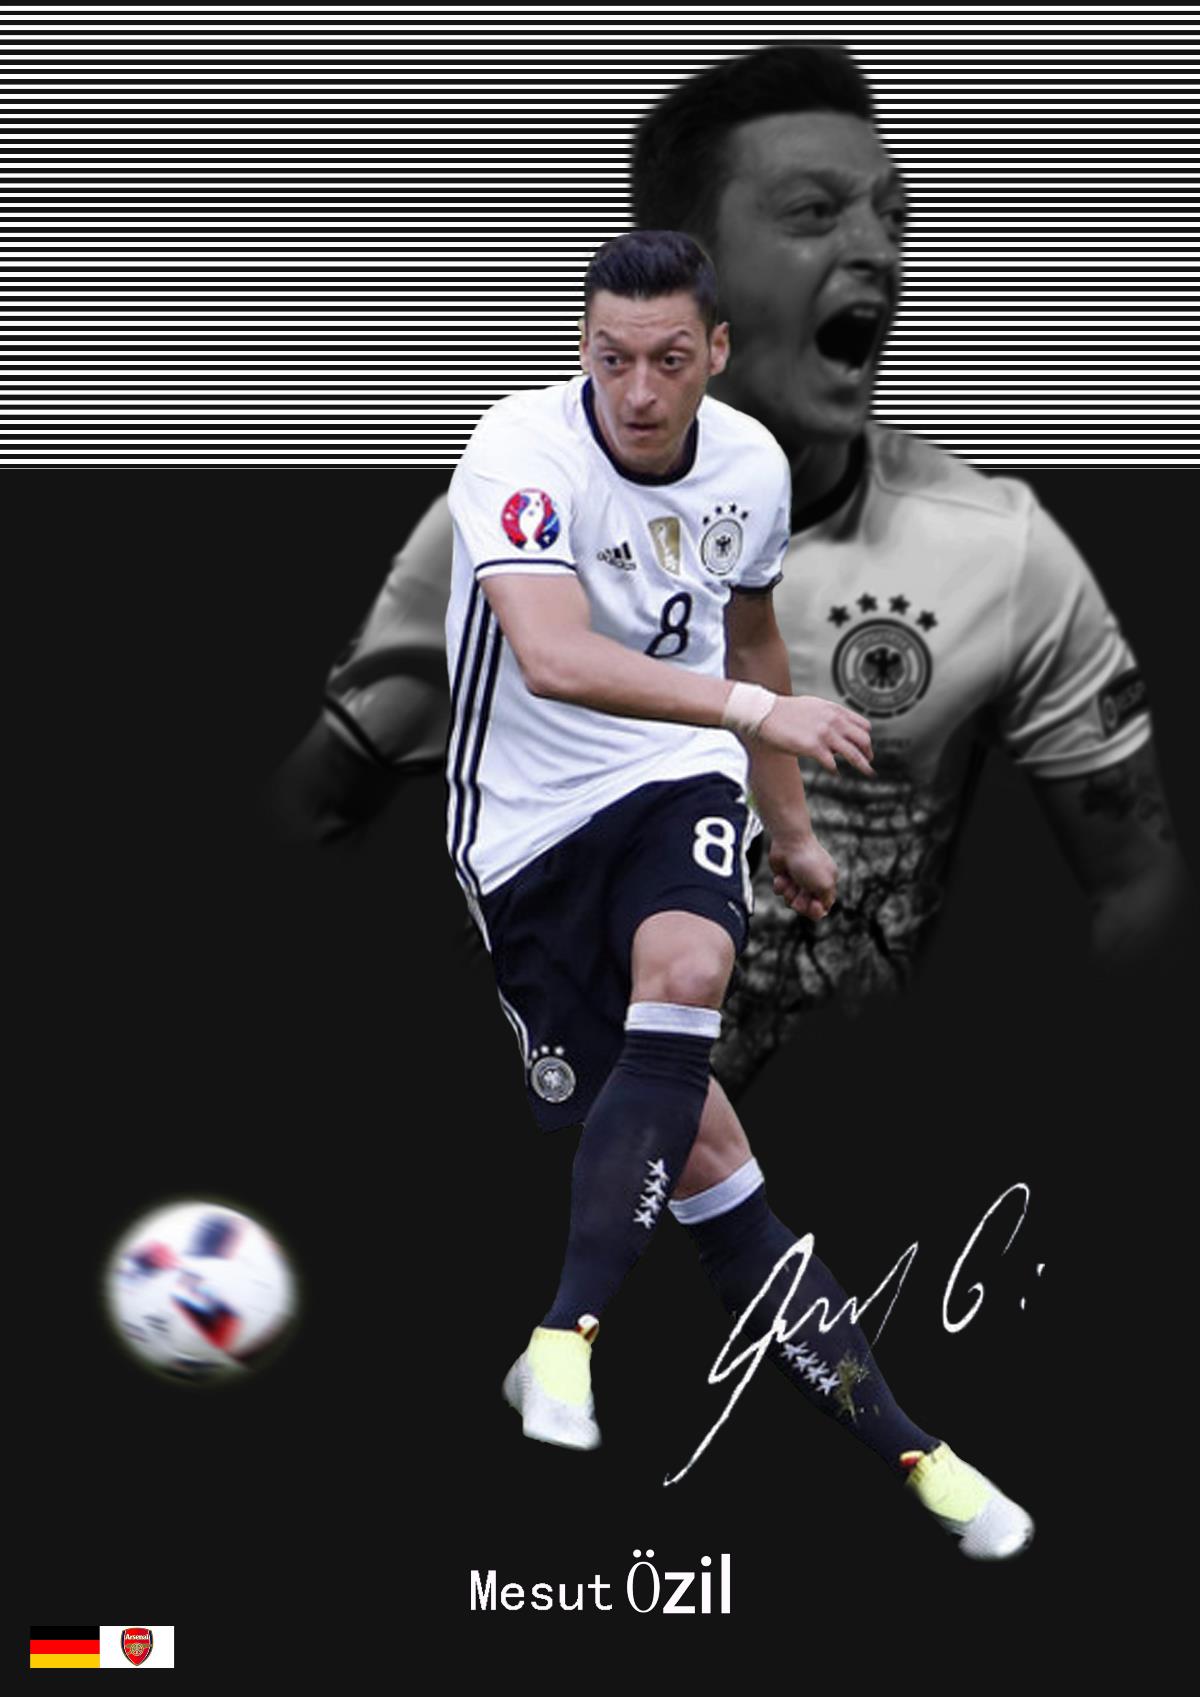 【足球系列】原创足球明星签名海报设计-厄齐尔